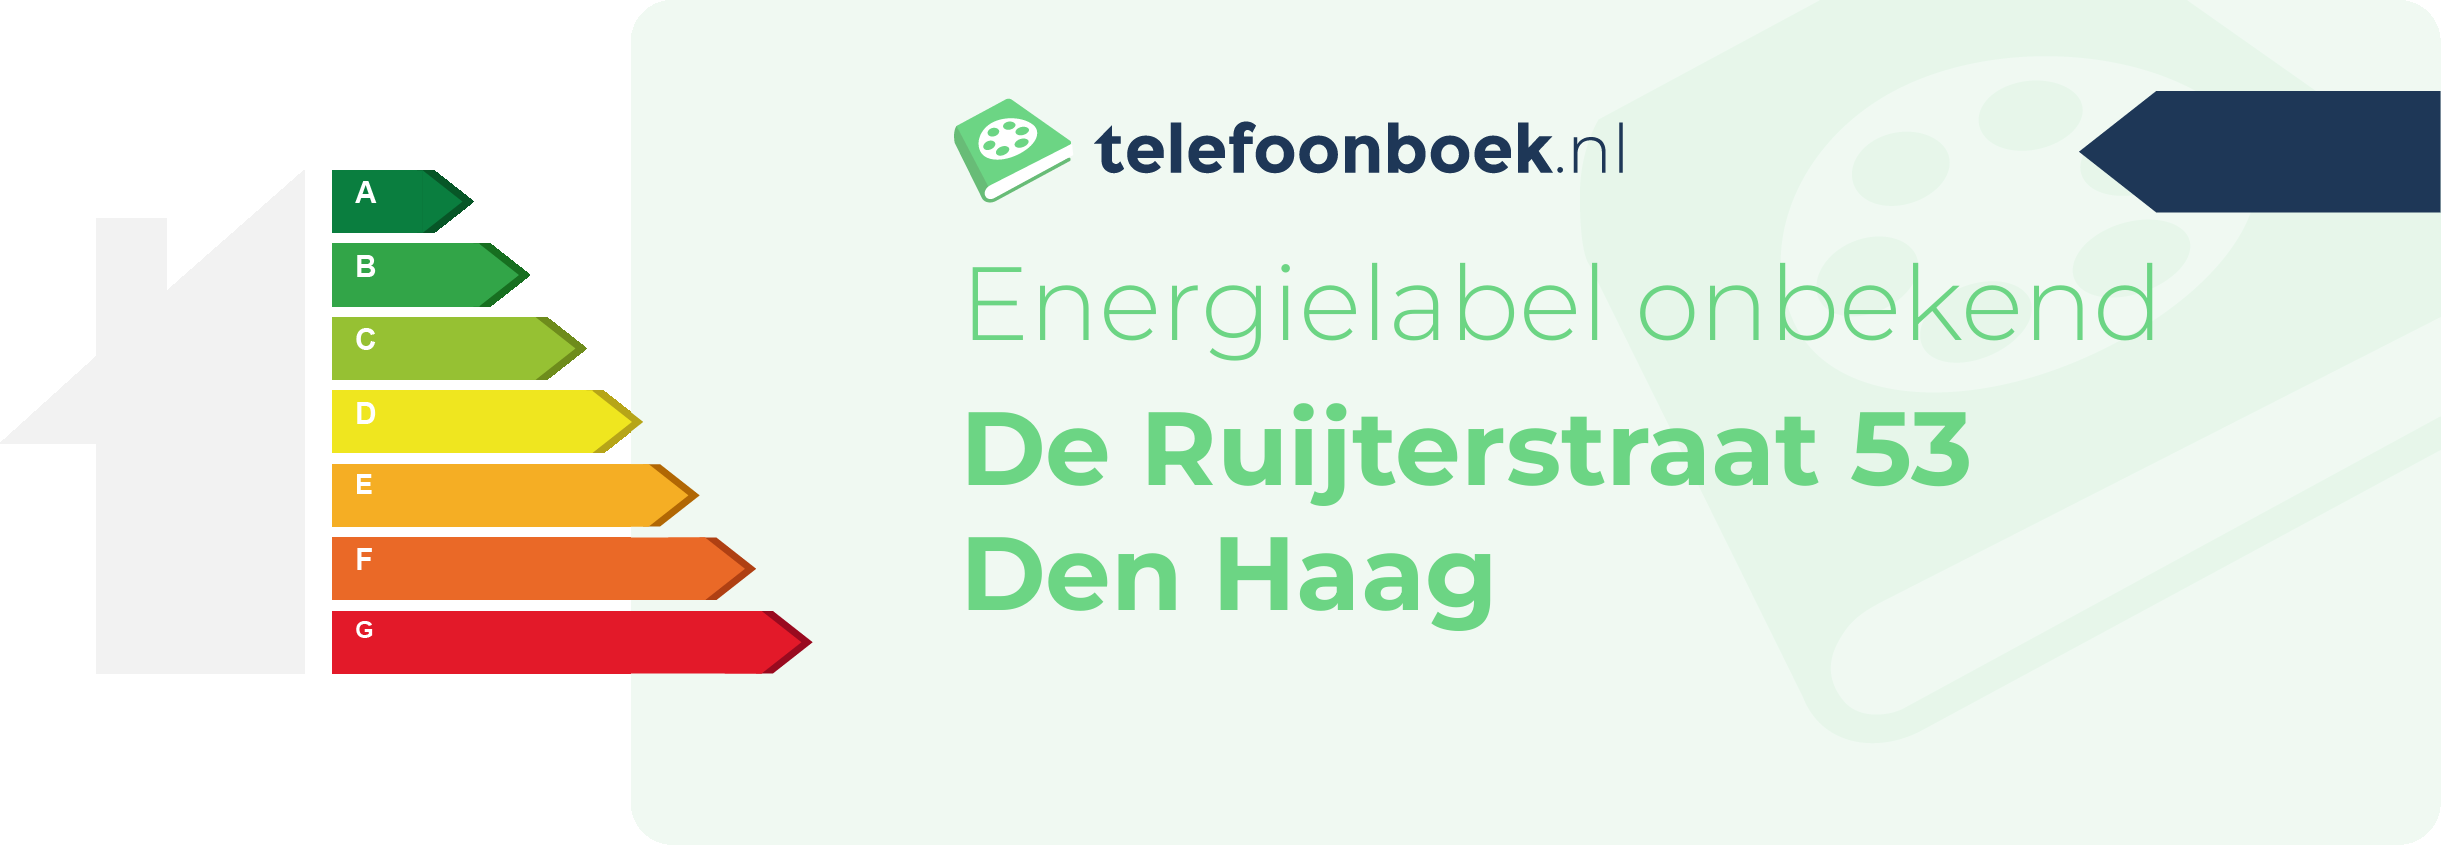 Energielabel De Ruijterstraat 53 Den Haag